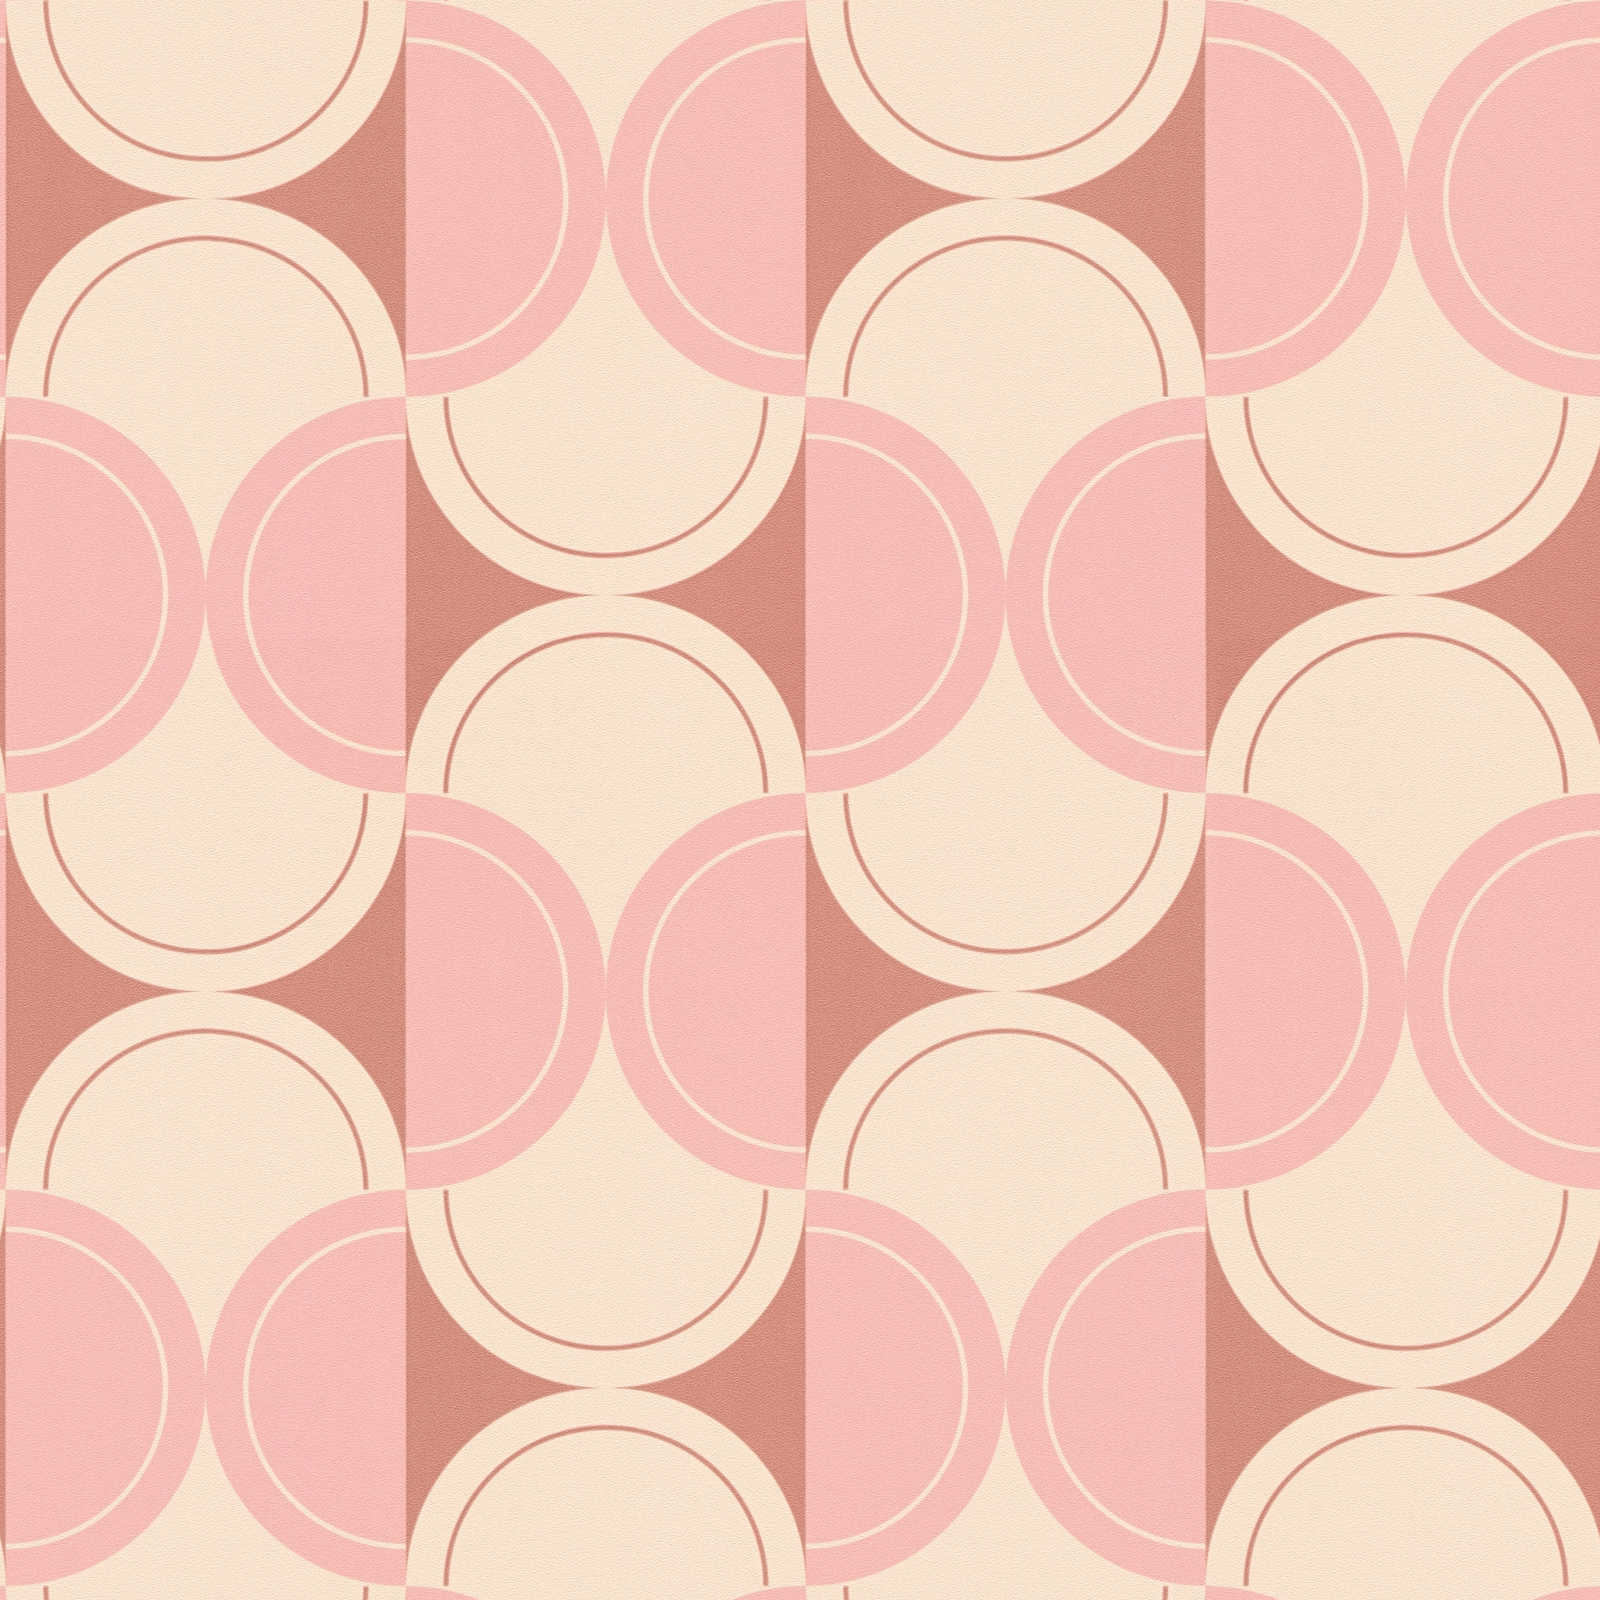             Retro vliesbehang met halve cirkel patroon - beige, roze, rood
        